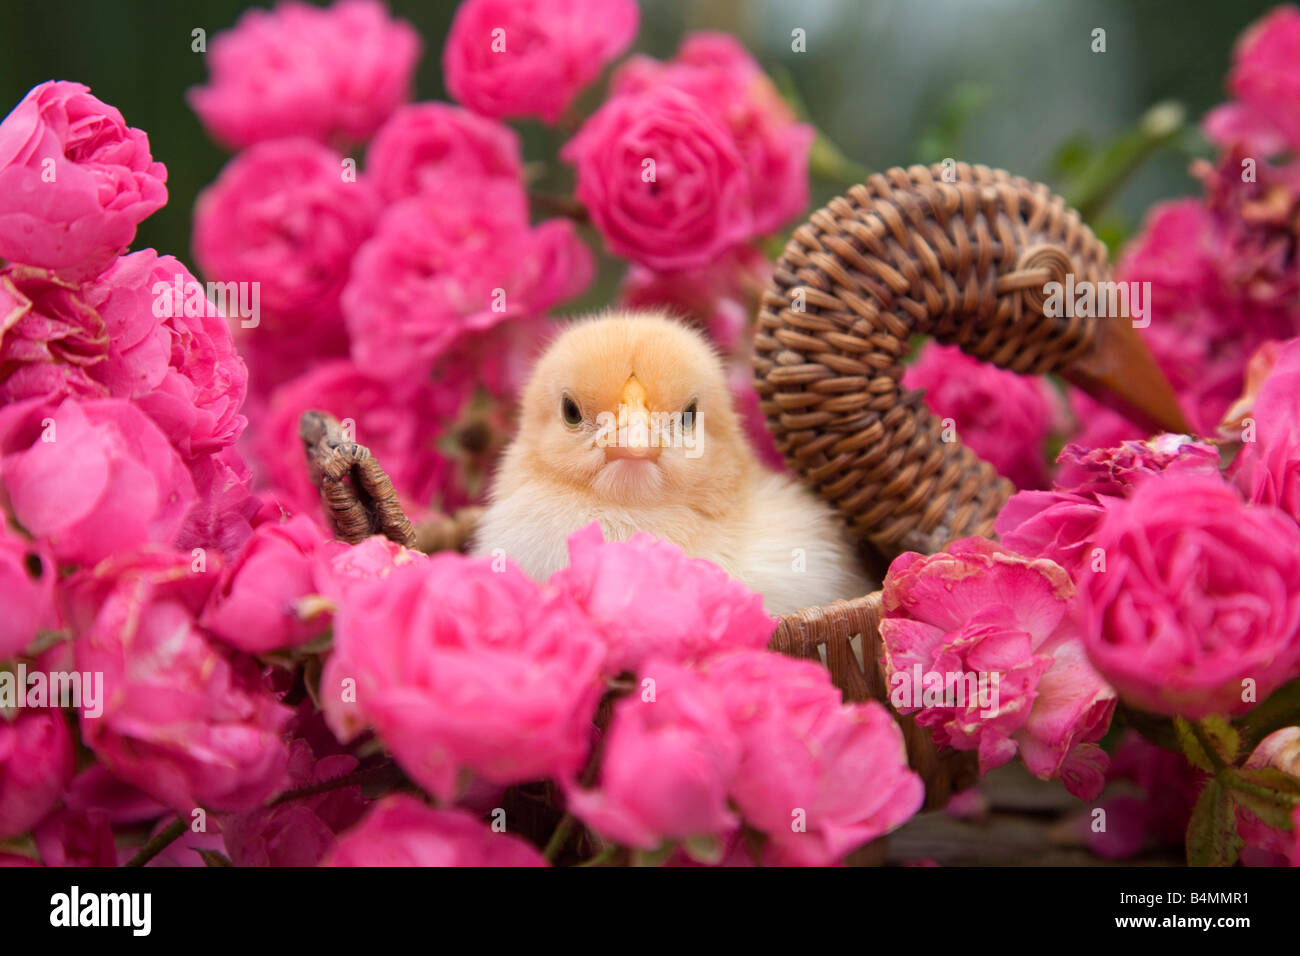 Pulcino giovane seduto in un cestello con le rose rosa Foto Stock